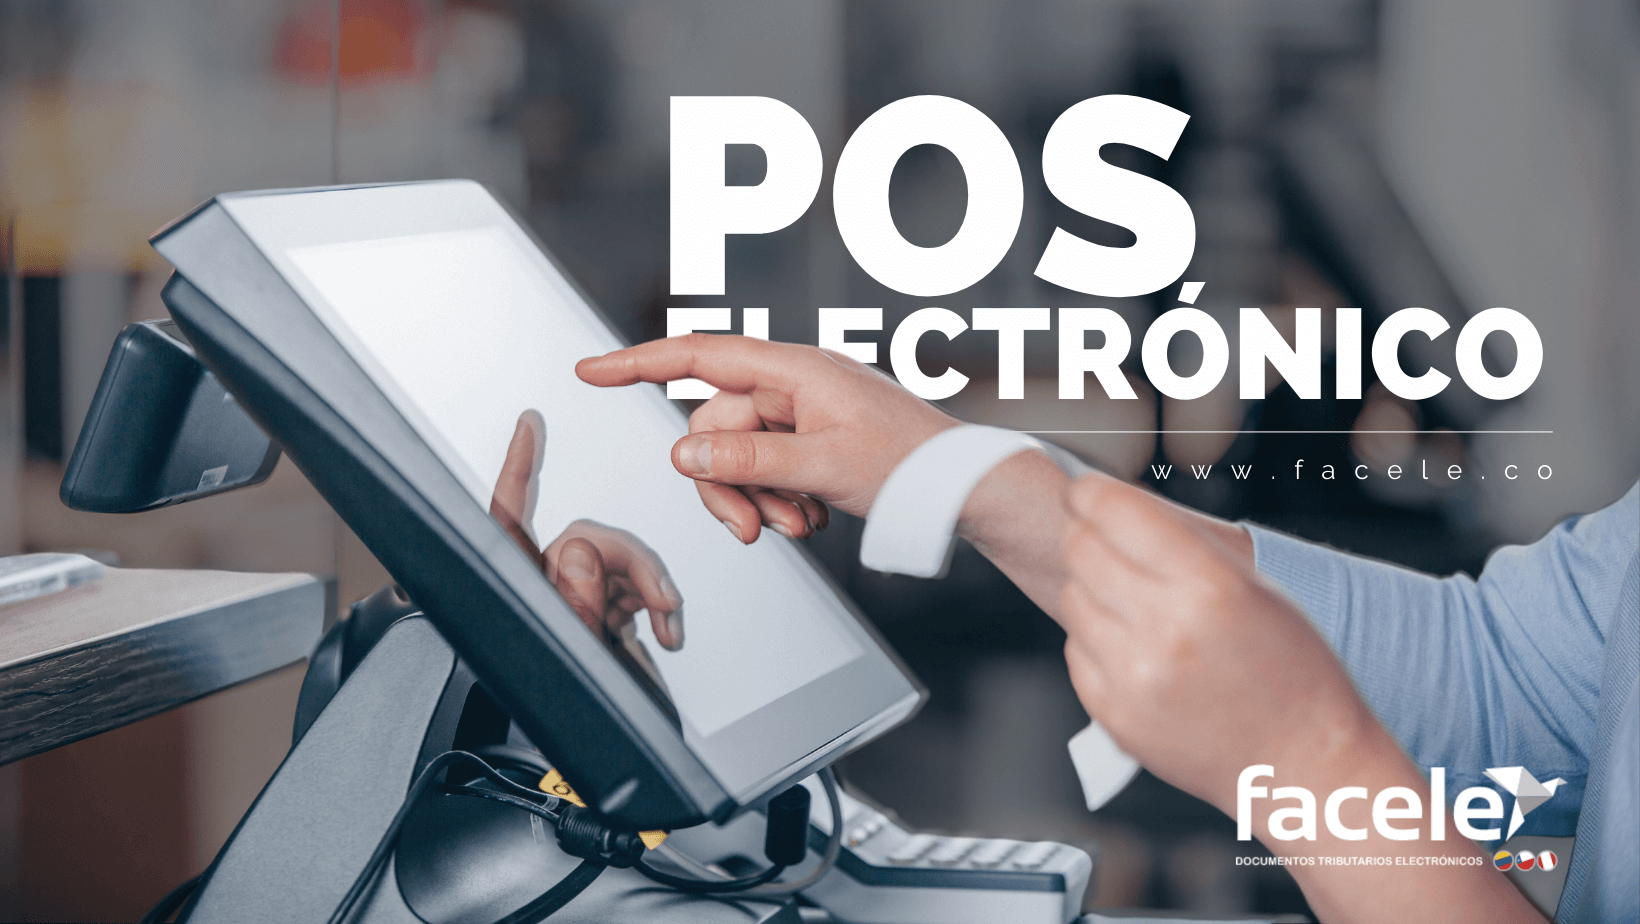 Sistema de Facturación electrónica | POS electrónico